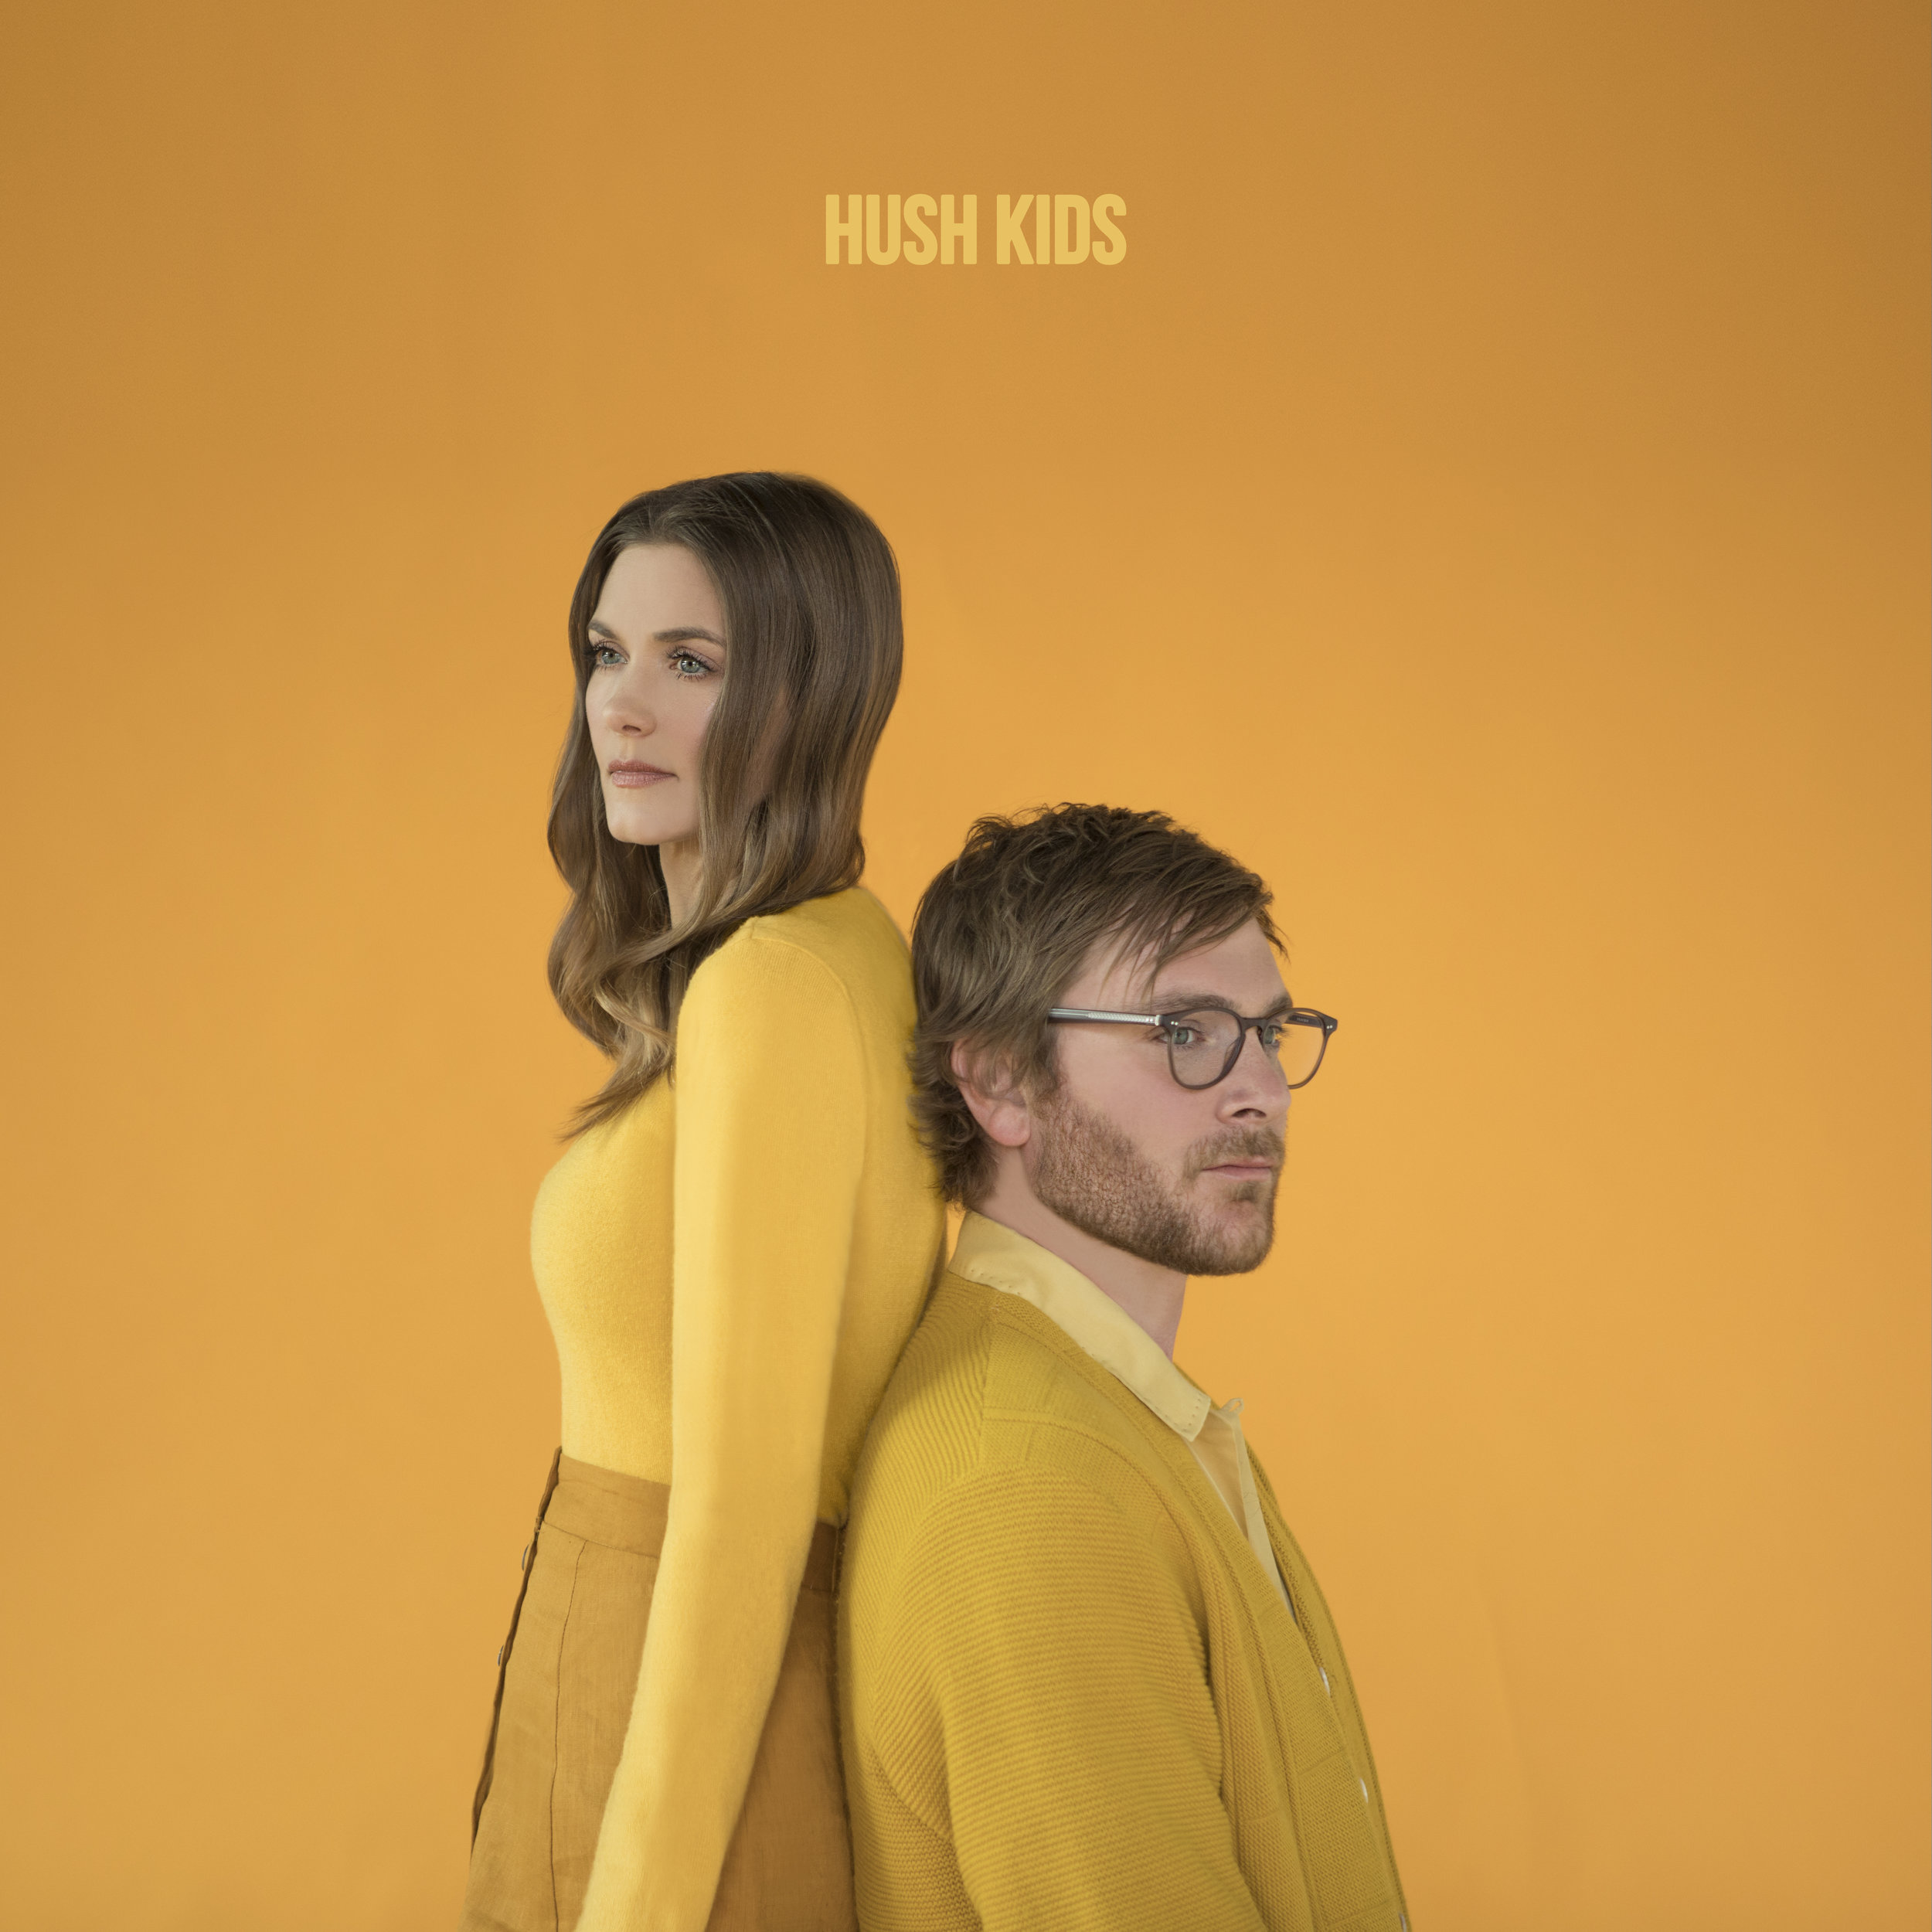 hush kids album cover (1).jpg